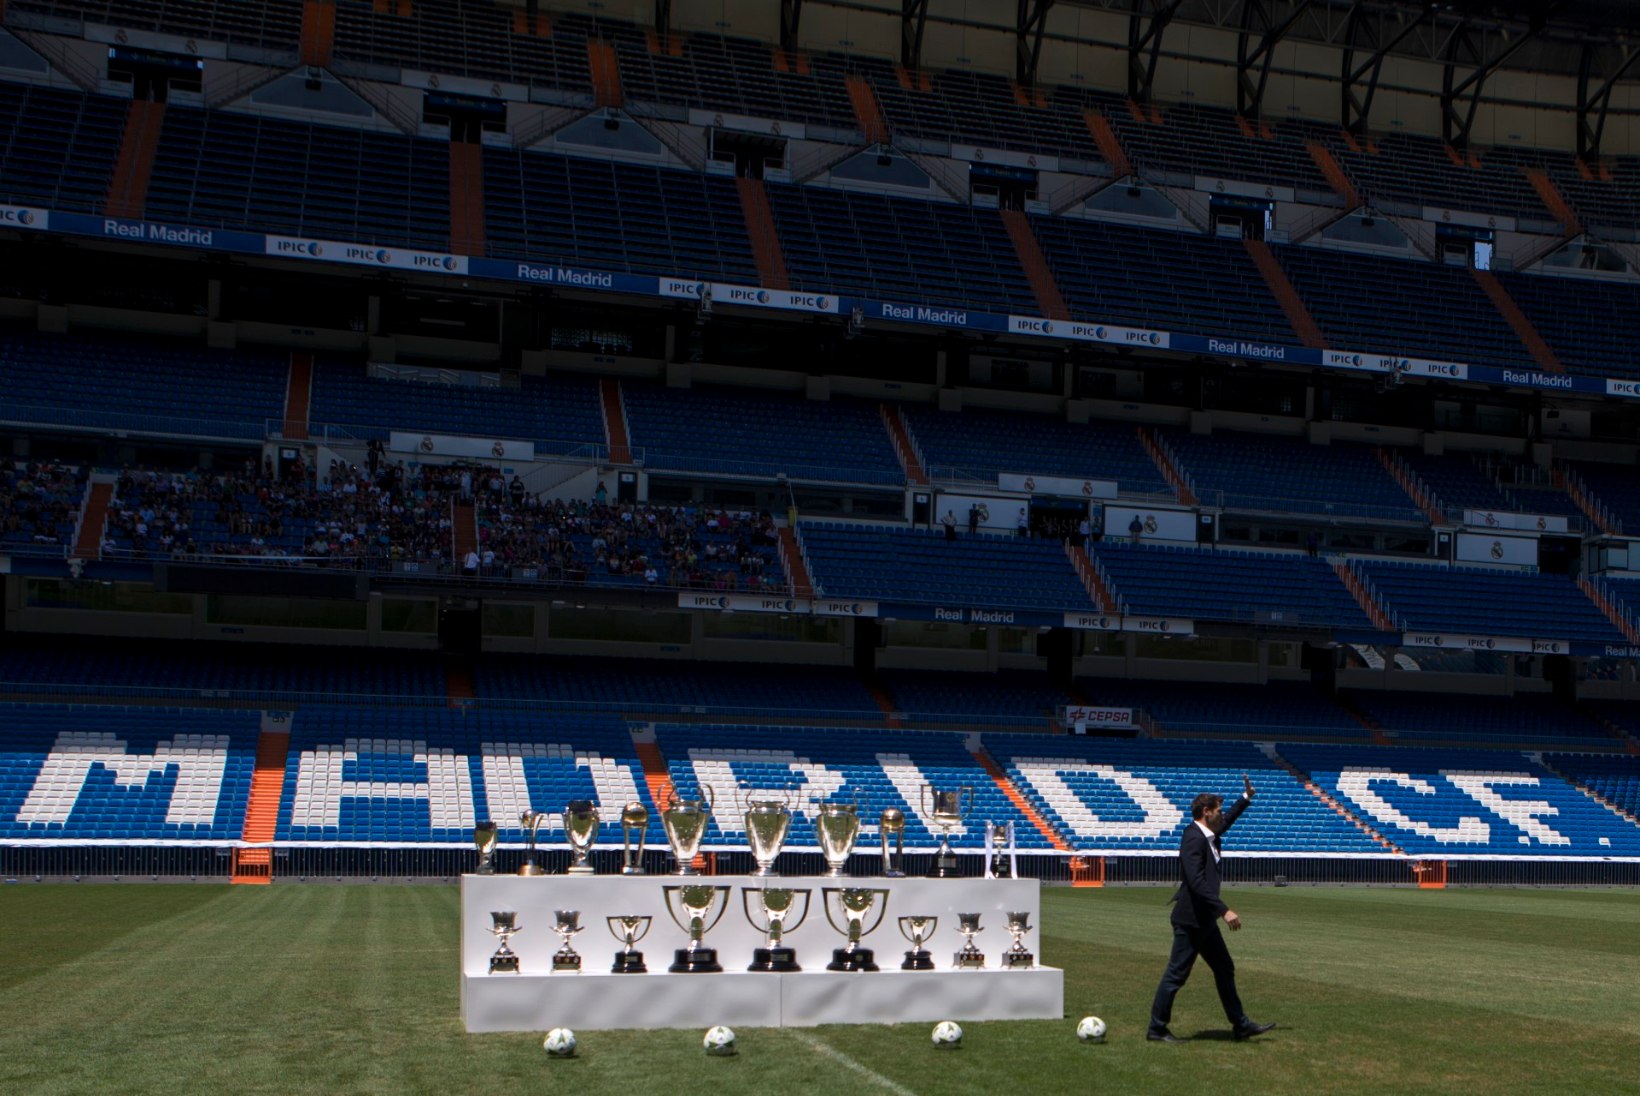 FOTOD | Iker Casillas laotas oma üüratu karikasaagi lauale